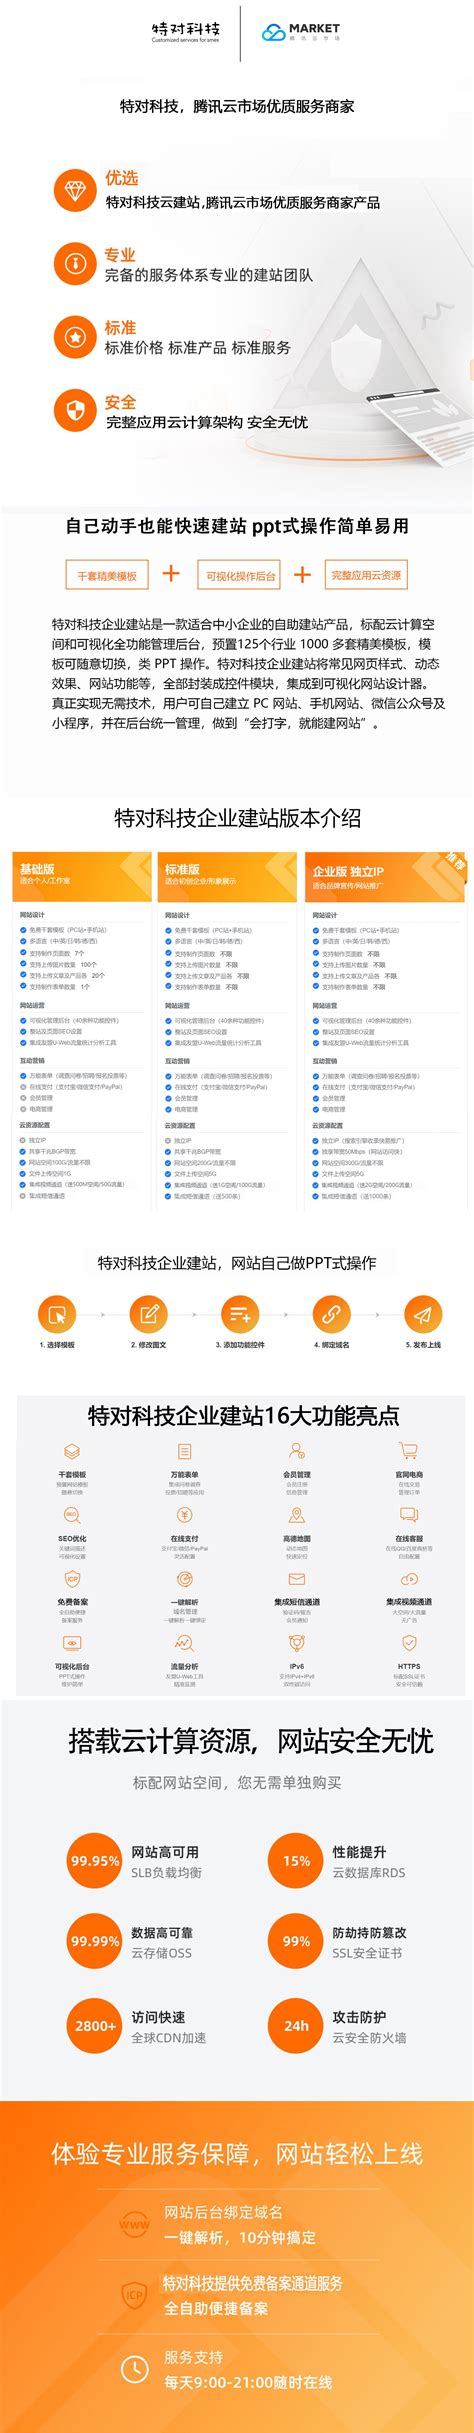 北京网站建设_高端网站设计_H5网站定制_做网站找企迪建站公司